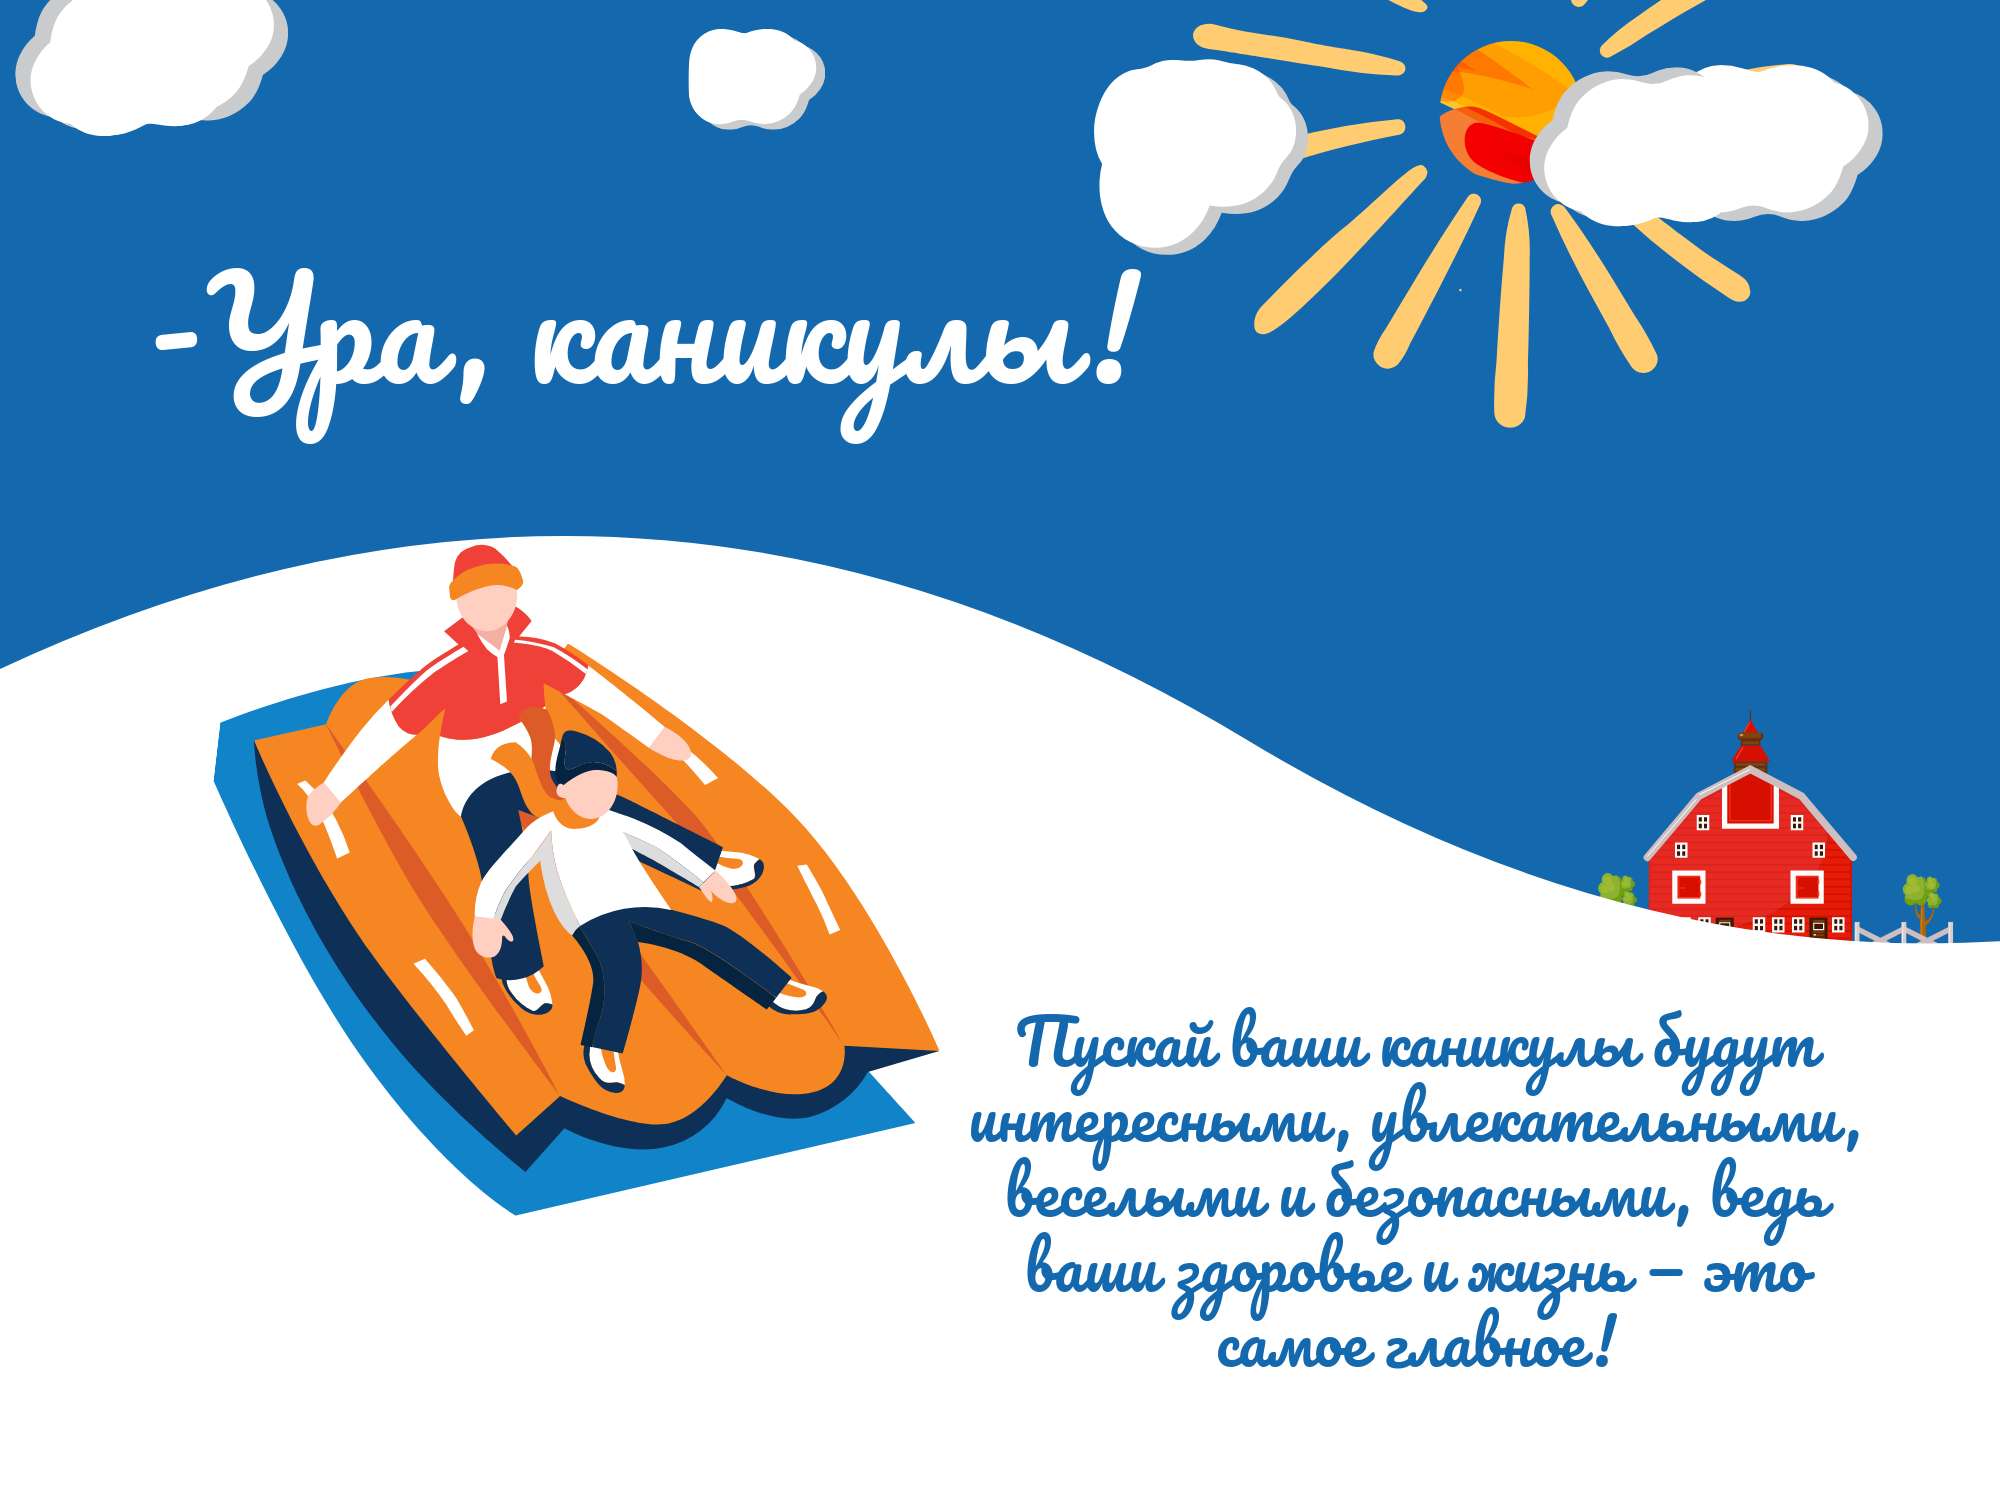 Зимняя открытка плакат "ура, каникулы" с изображением катания на горке и полезными пожеланиями